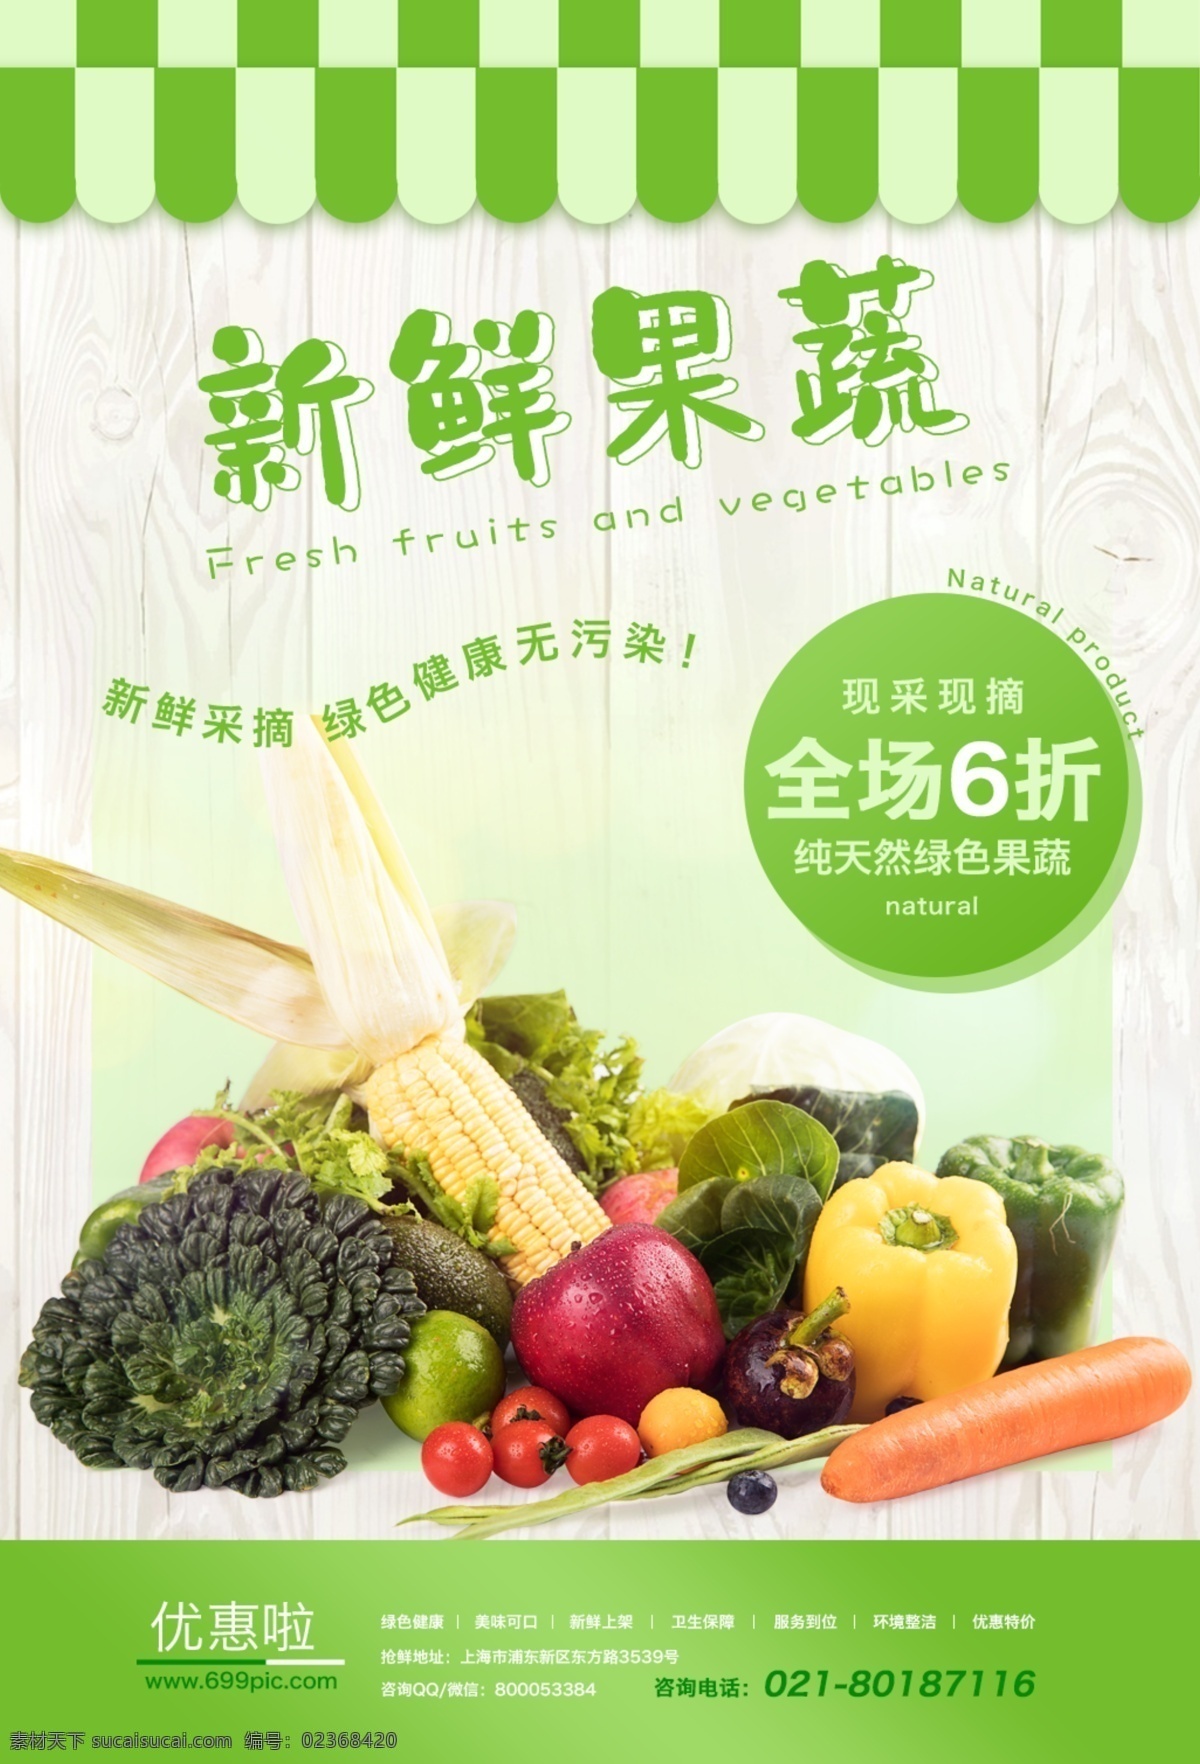 新鲜 果蔬 食品 宣传海报 新鲜果蔬 食品海报 绿色食品 健康 养生 水果蔬菜 促销优惠 活动 玉米 苹果 青椒 纯天然